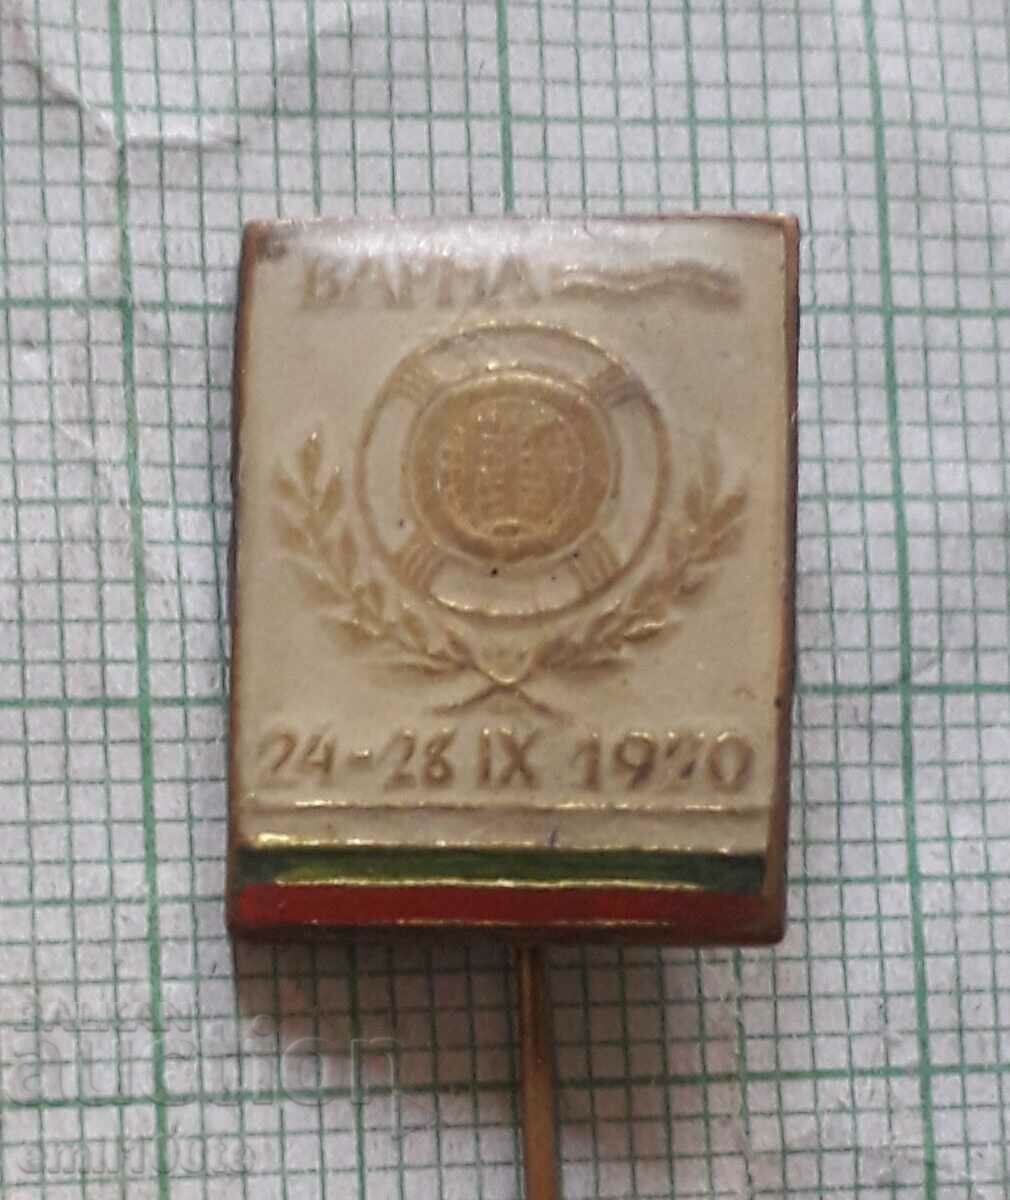 Badge - Varna September 24-28, 1970